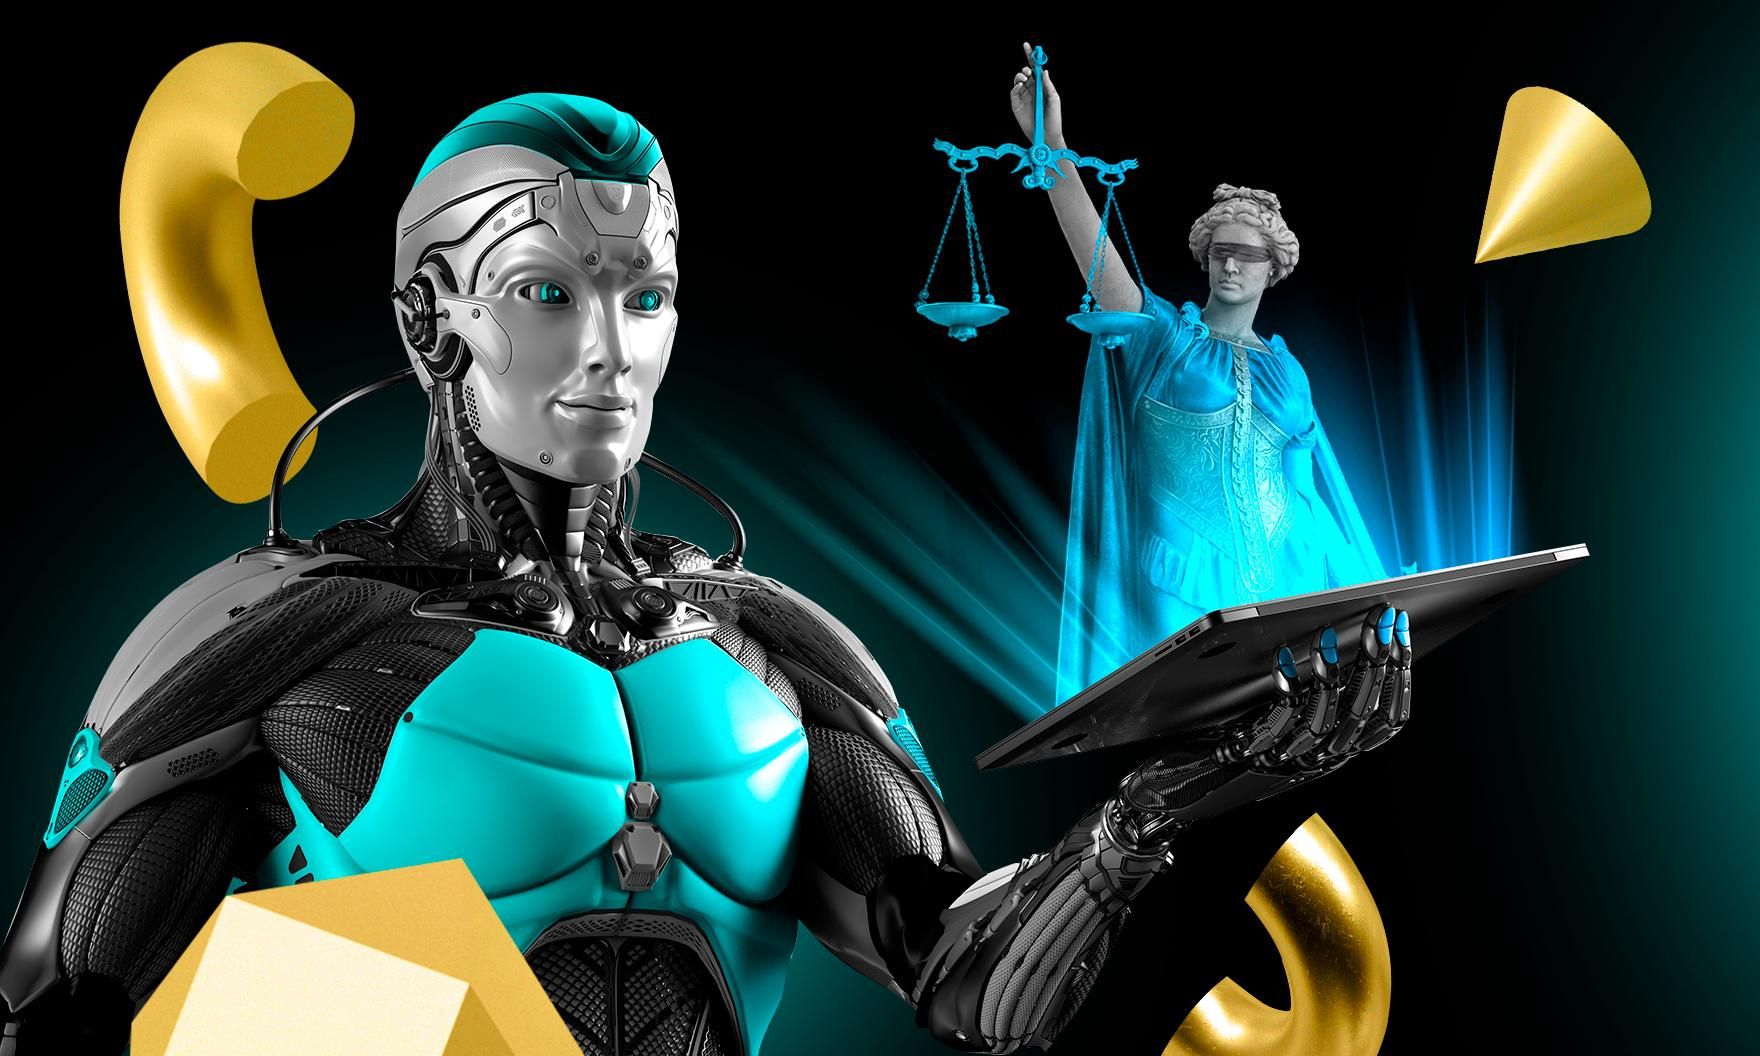 Аватар вместо мантии: какое будущее ждет судебную систему в эпоху инноваций